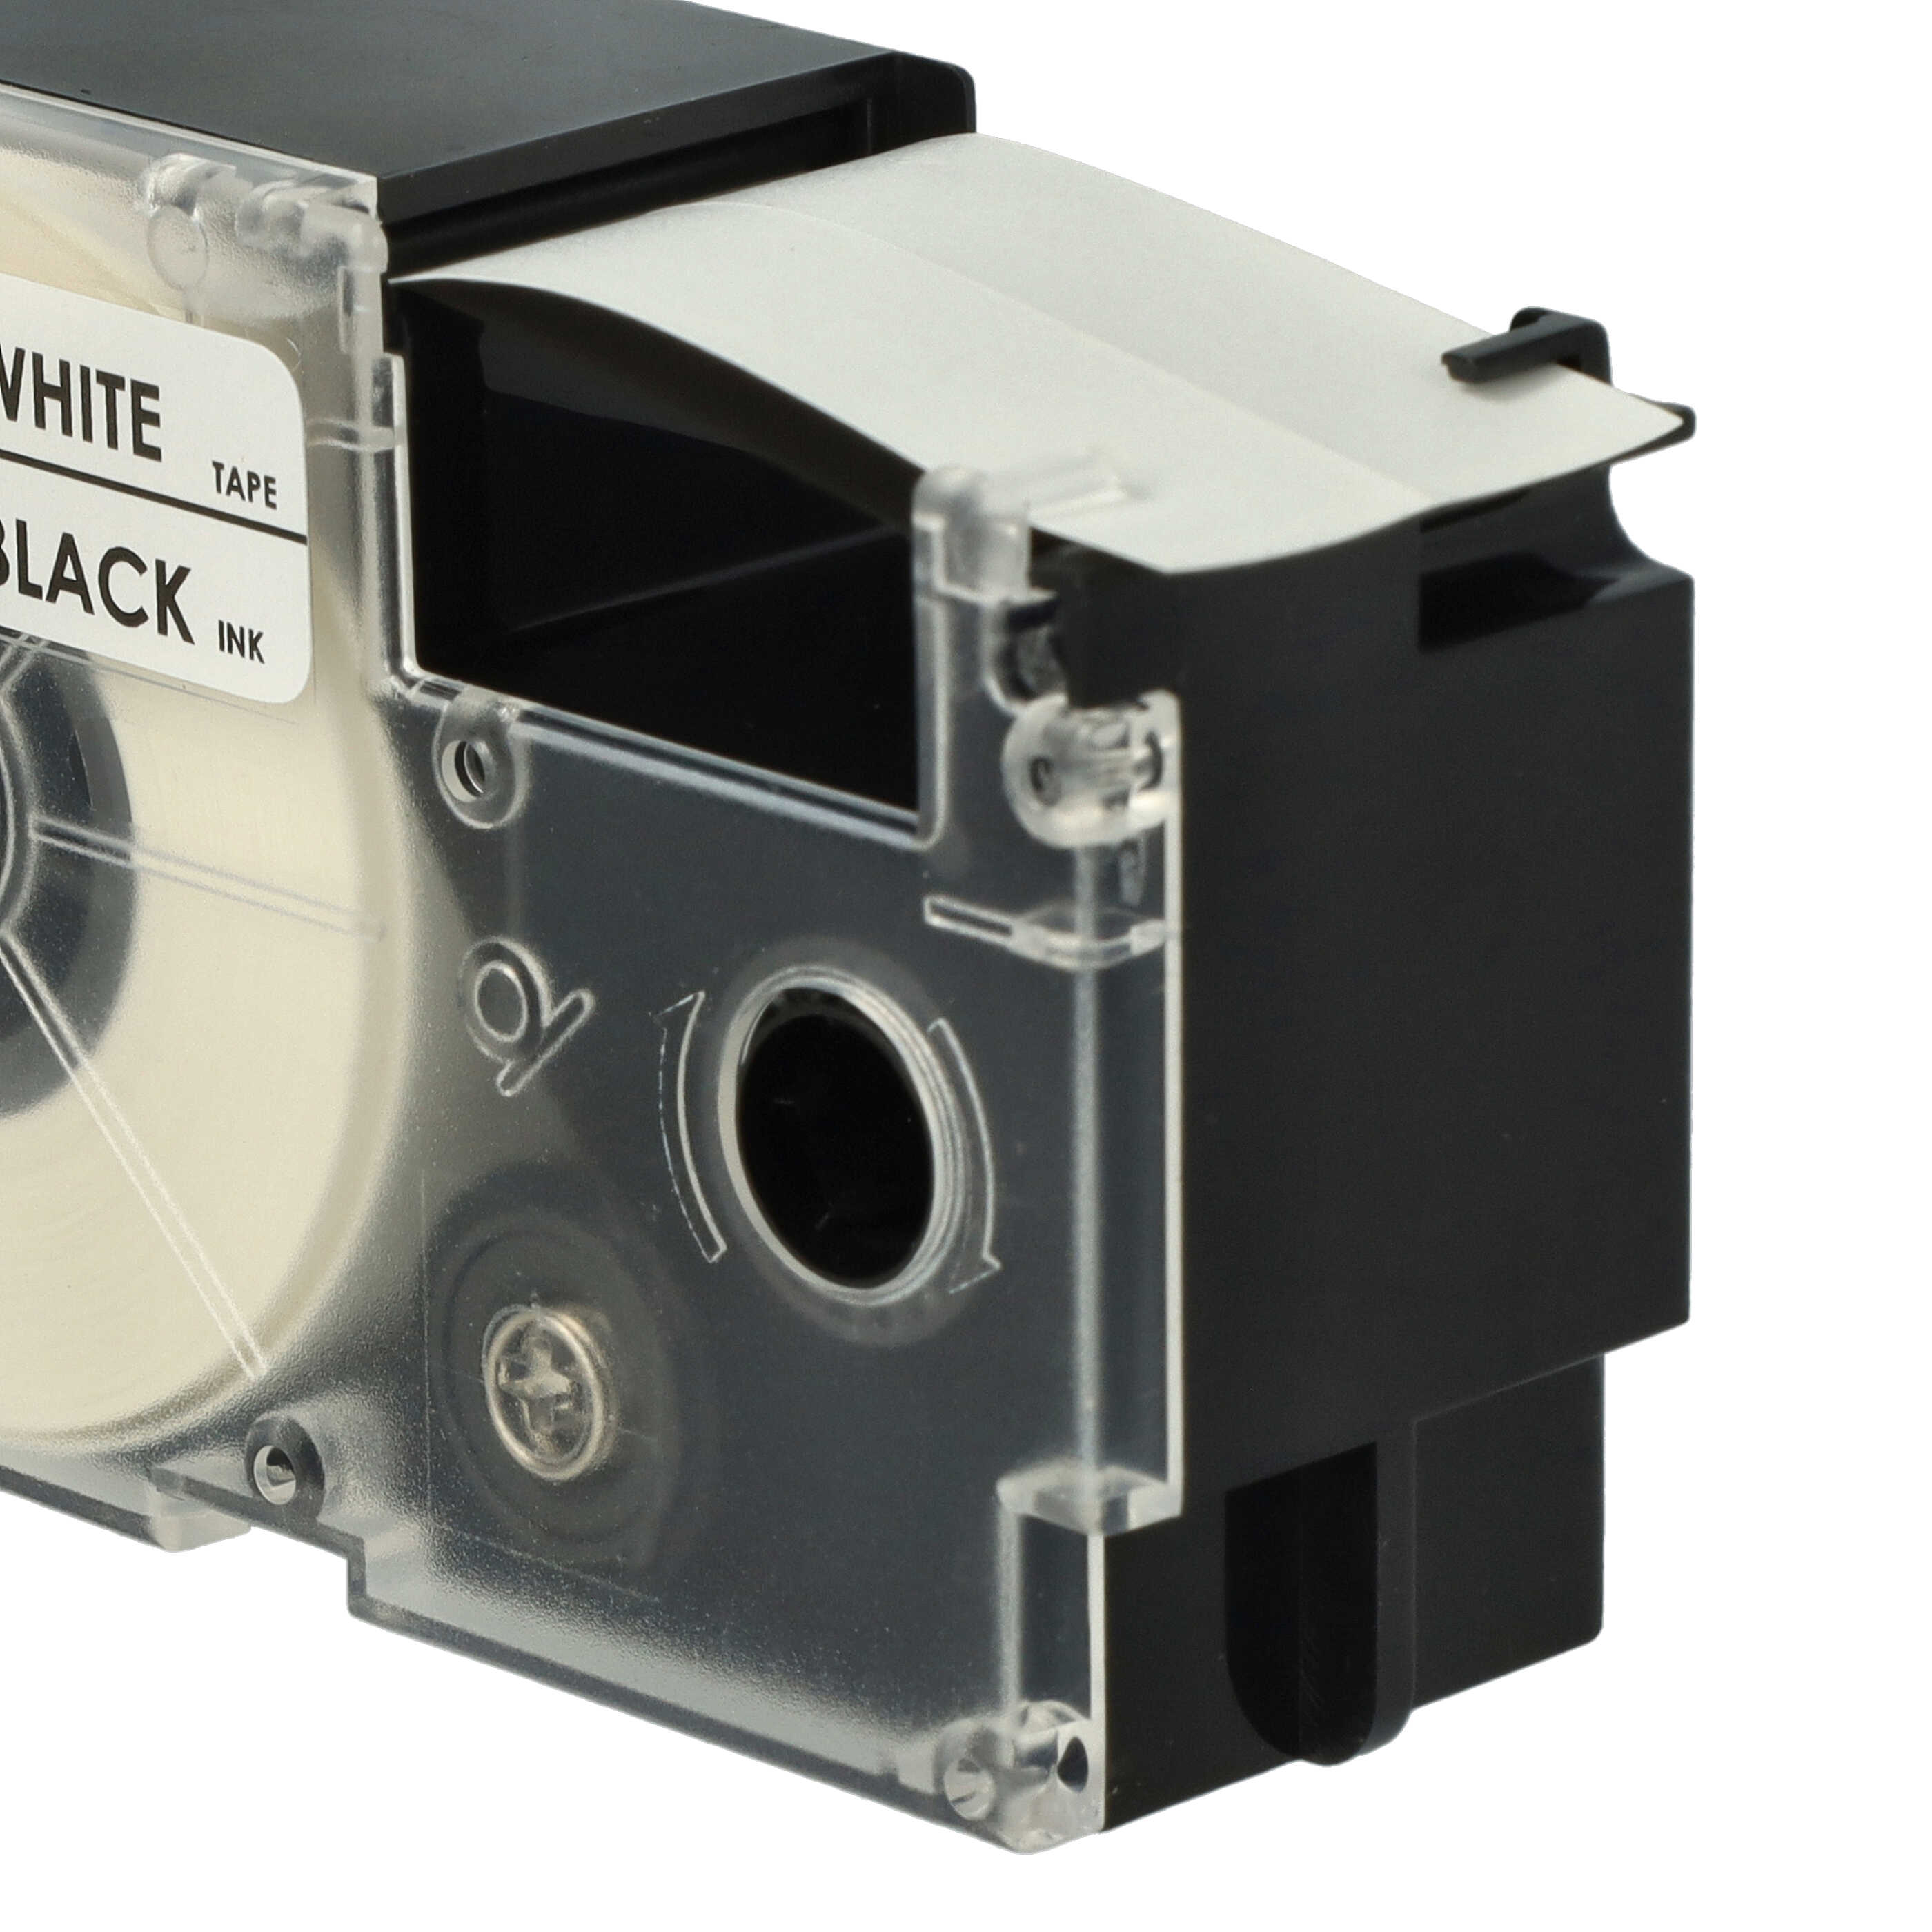 10x Casete cinta escritura reemplaza Casio XR-24WE1 Negro su Blanco